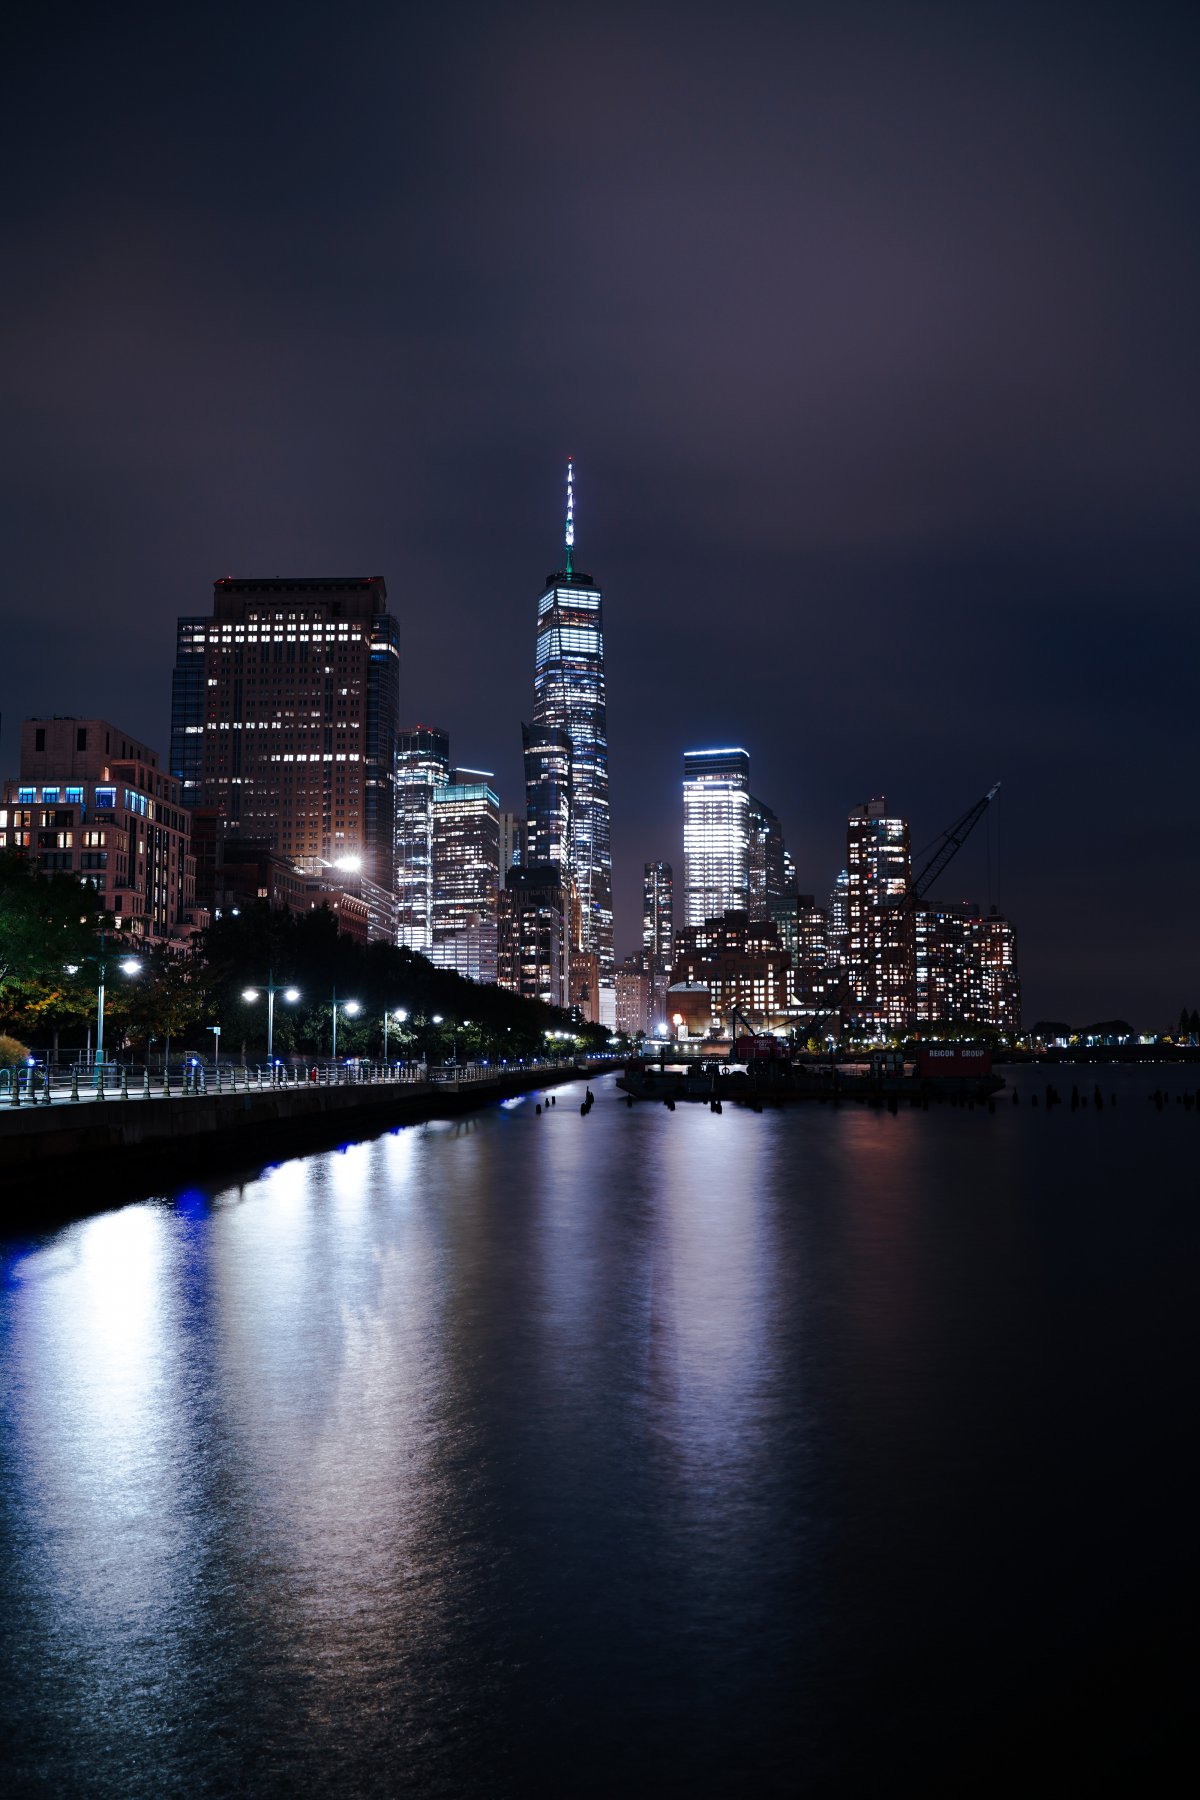 超好看的城市夜景图图片